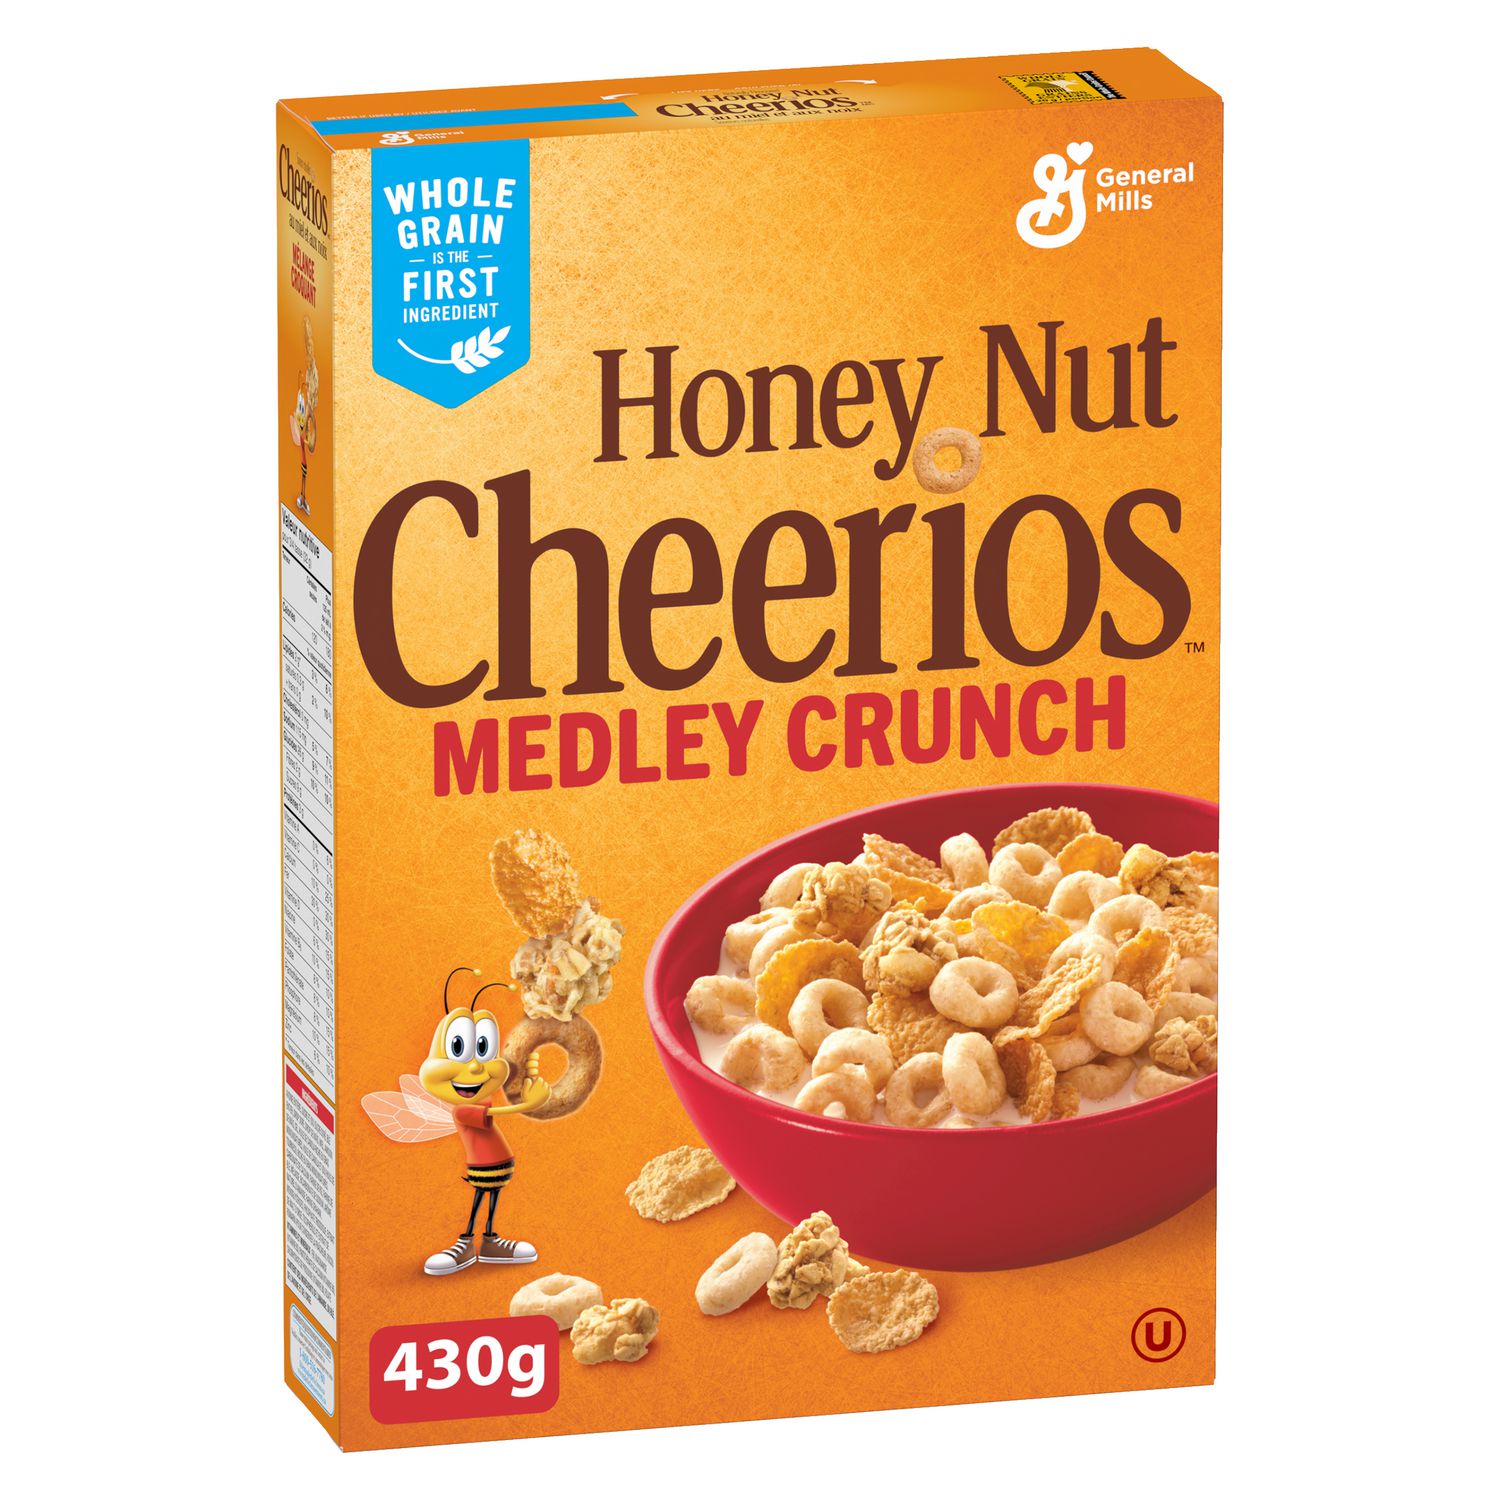 cheerios oat crunch